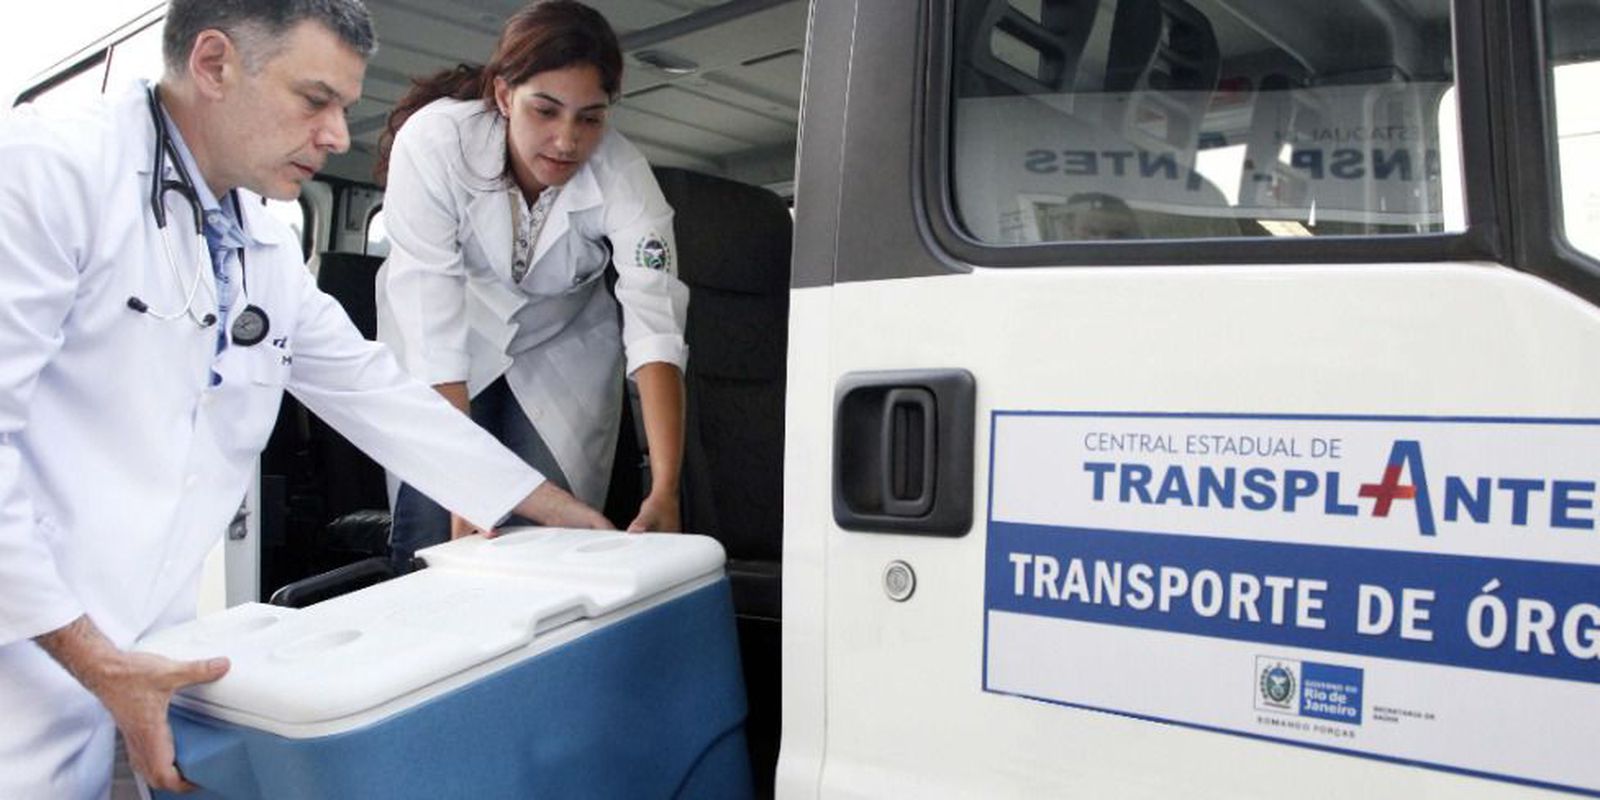 Rio de Janeiro hospitals set record for organ harvesting in 2021